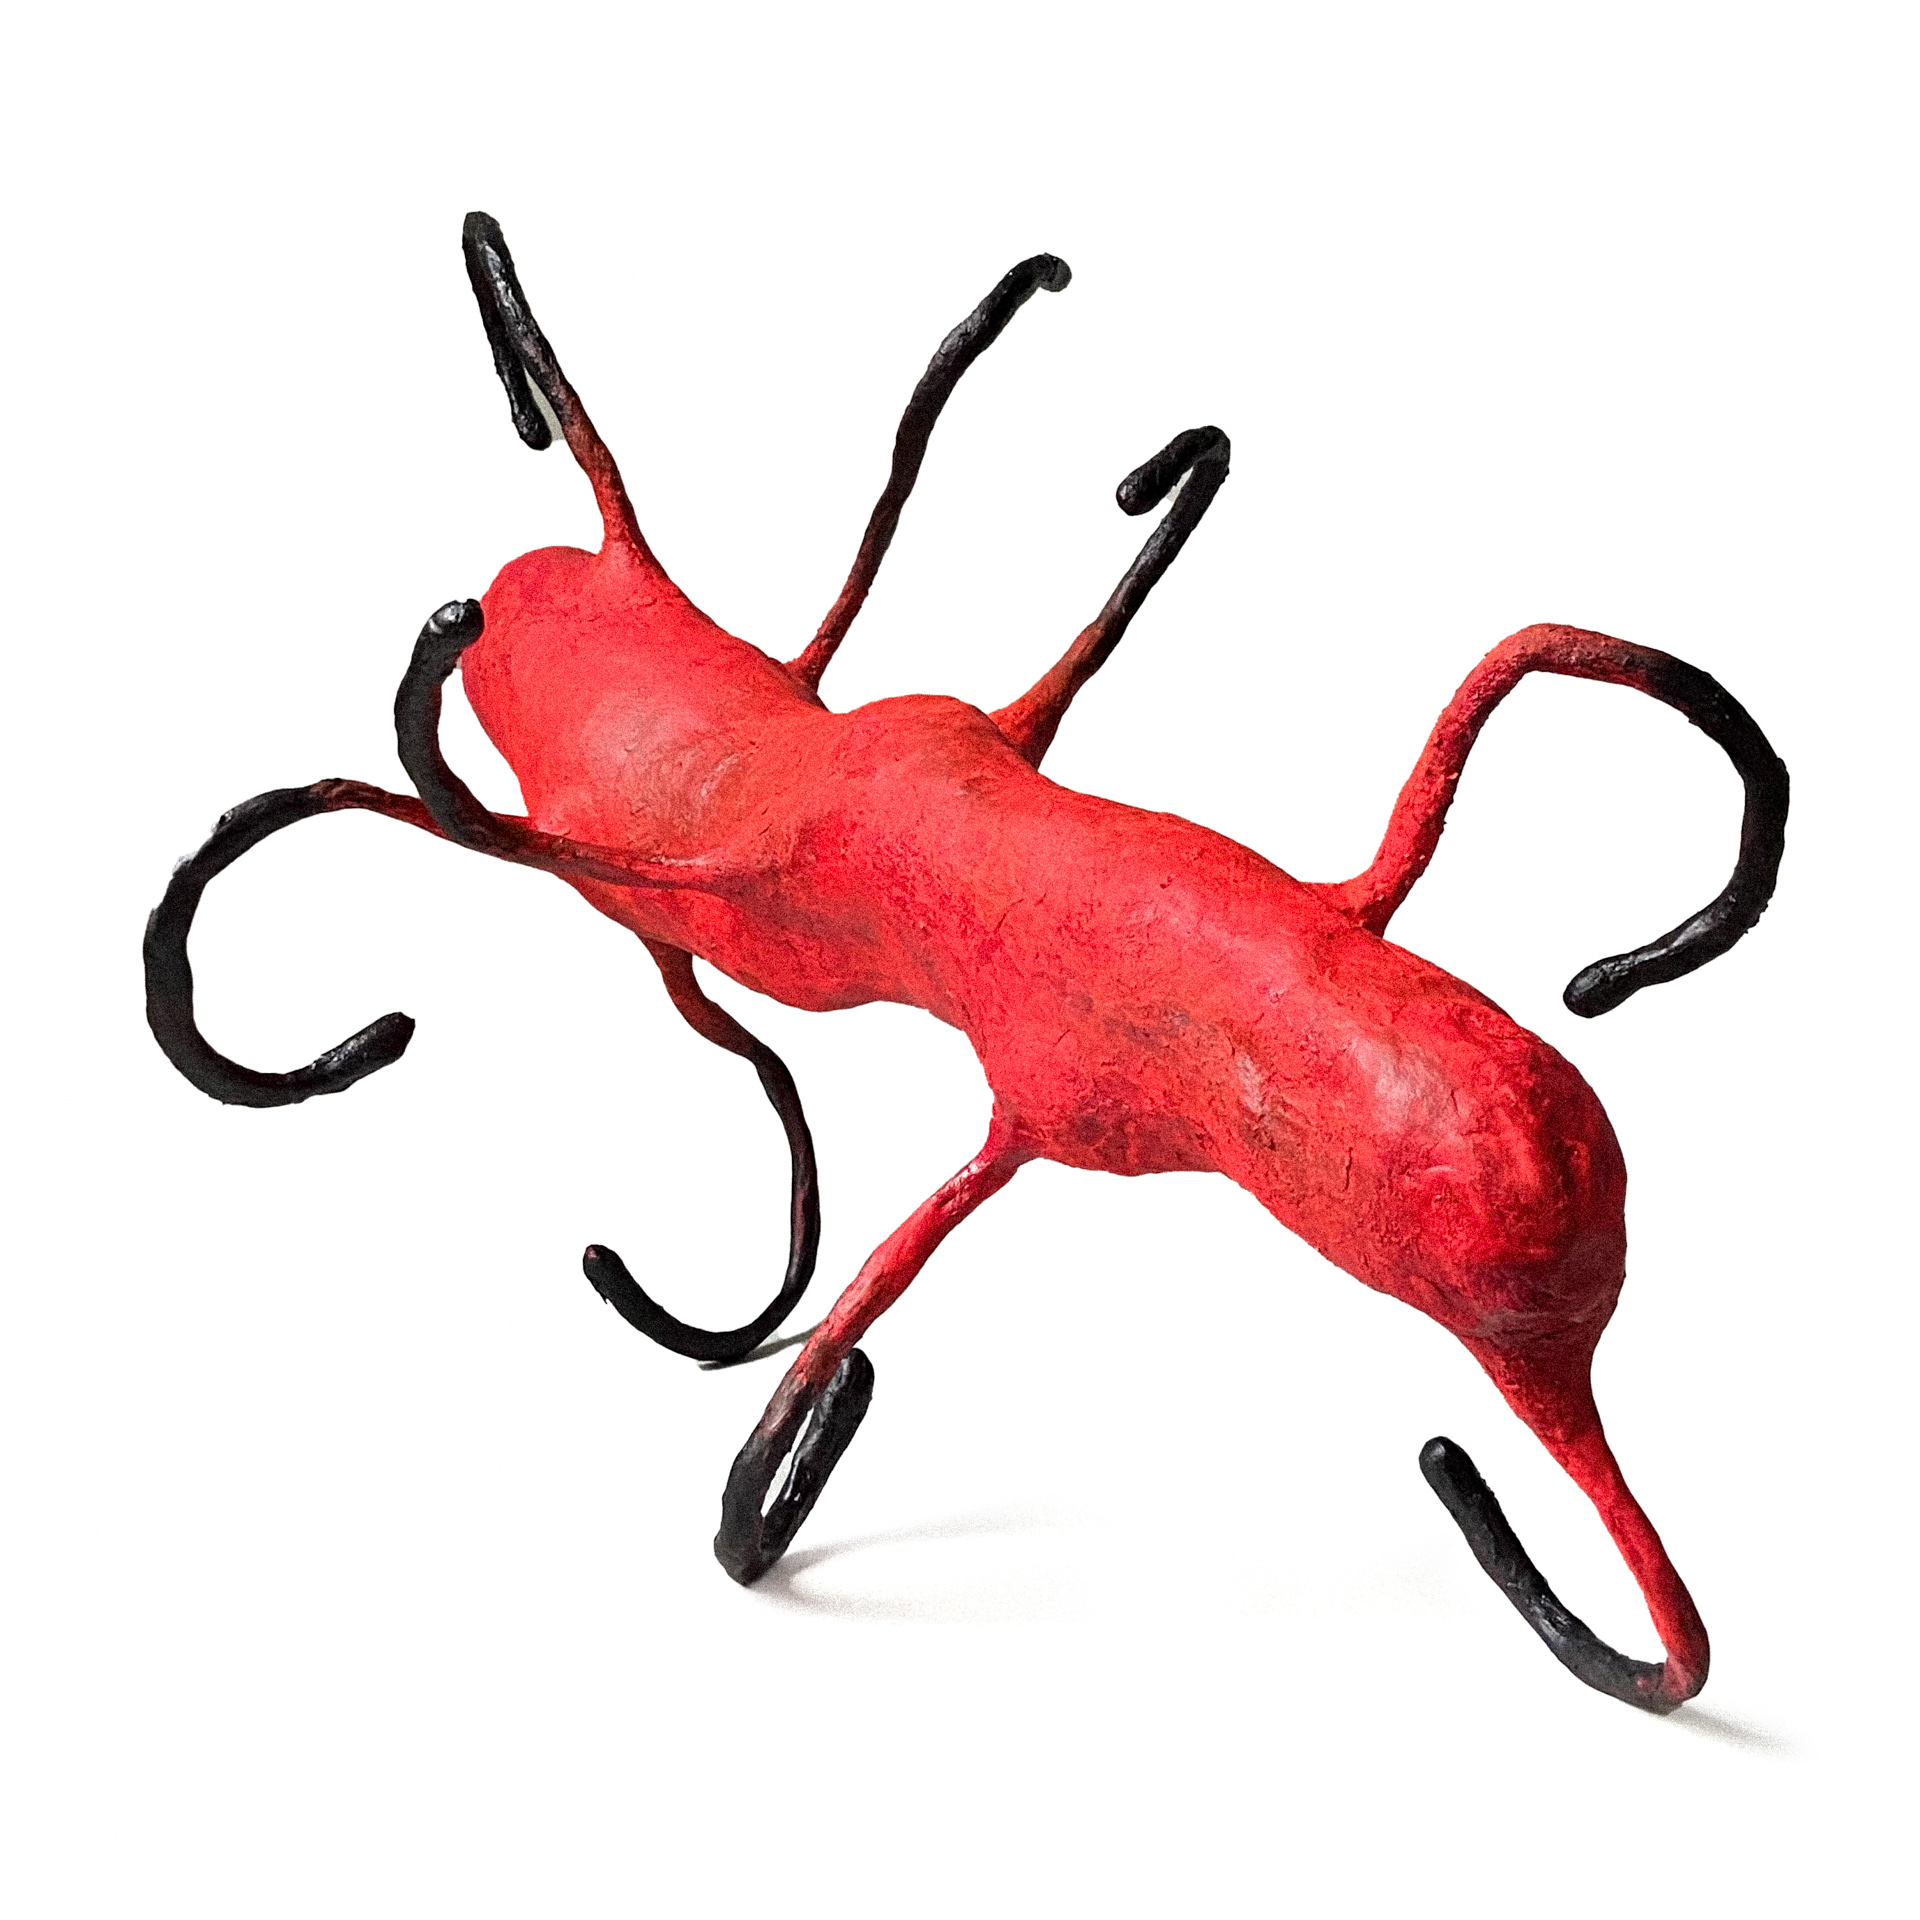 Czerwony, podłużny, organiczny obiekt rzeźbiarski z dziewięcioma podwiniętymi czarnymi odnóżami. Przypomina owada.